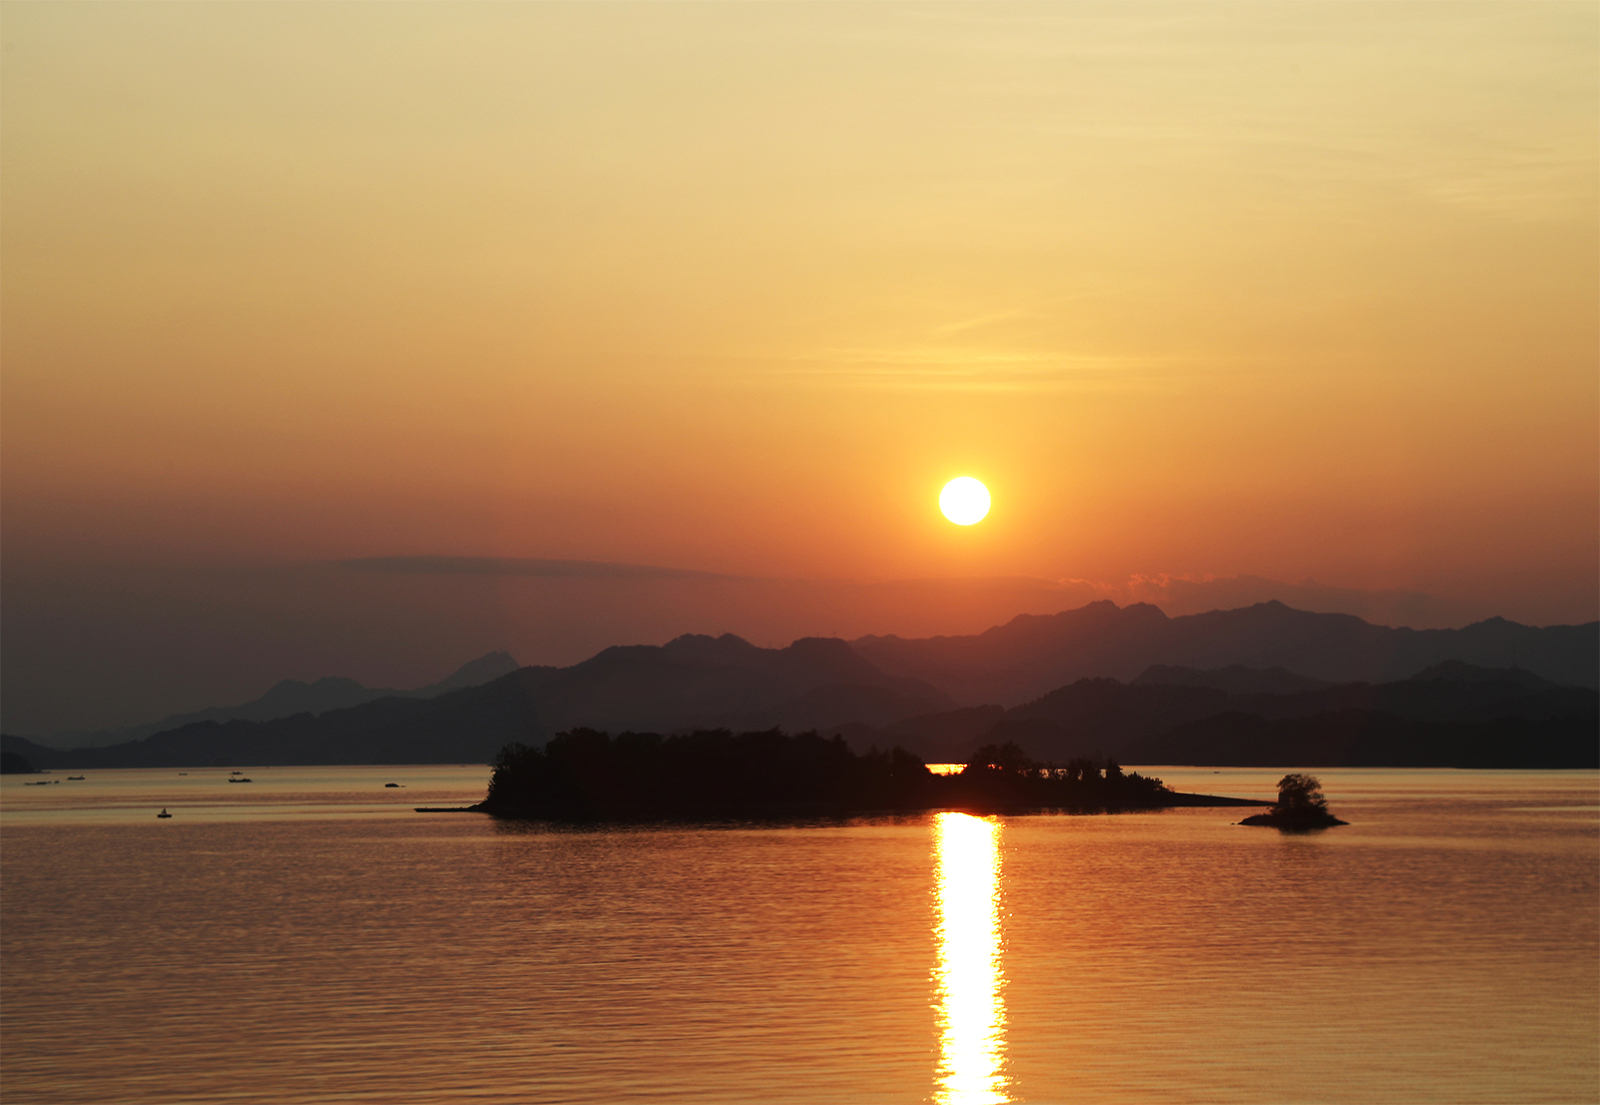 The sunset at Qiandao Lake in Chun'an County, Zhejiang Province. /CGTN